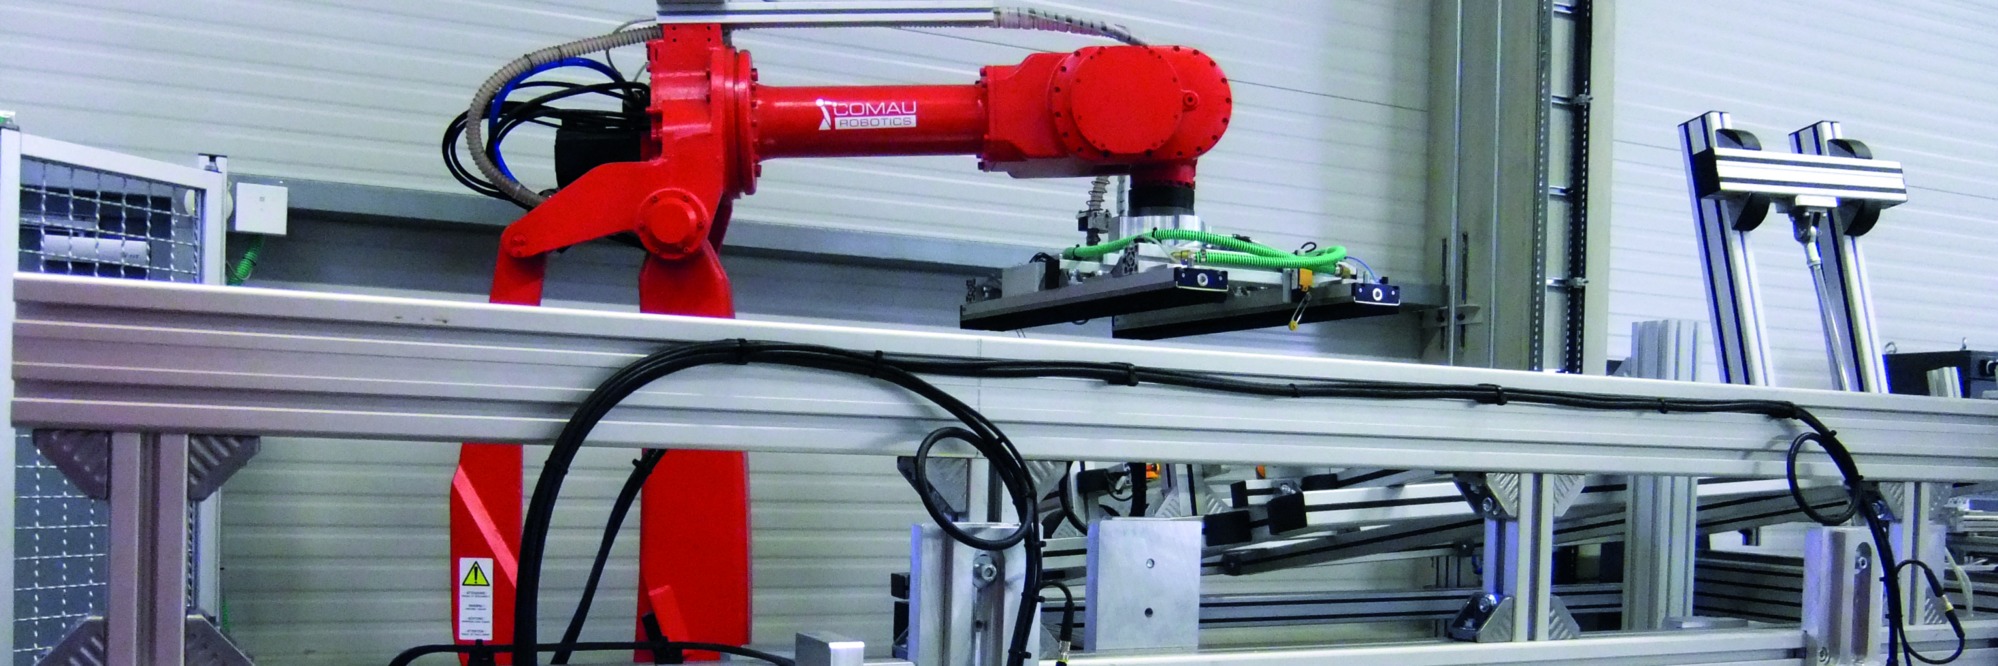 Handwerk trifft Industrie: Robotics, Automatisierung und Handarbeit